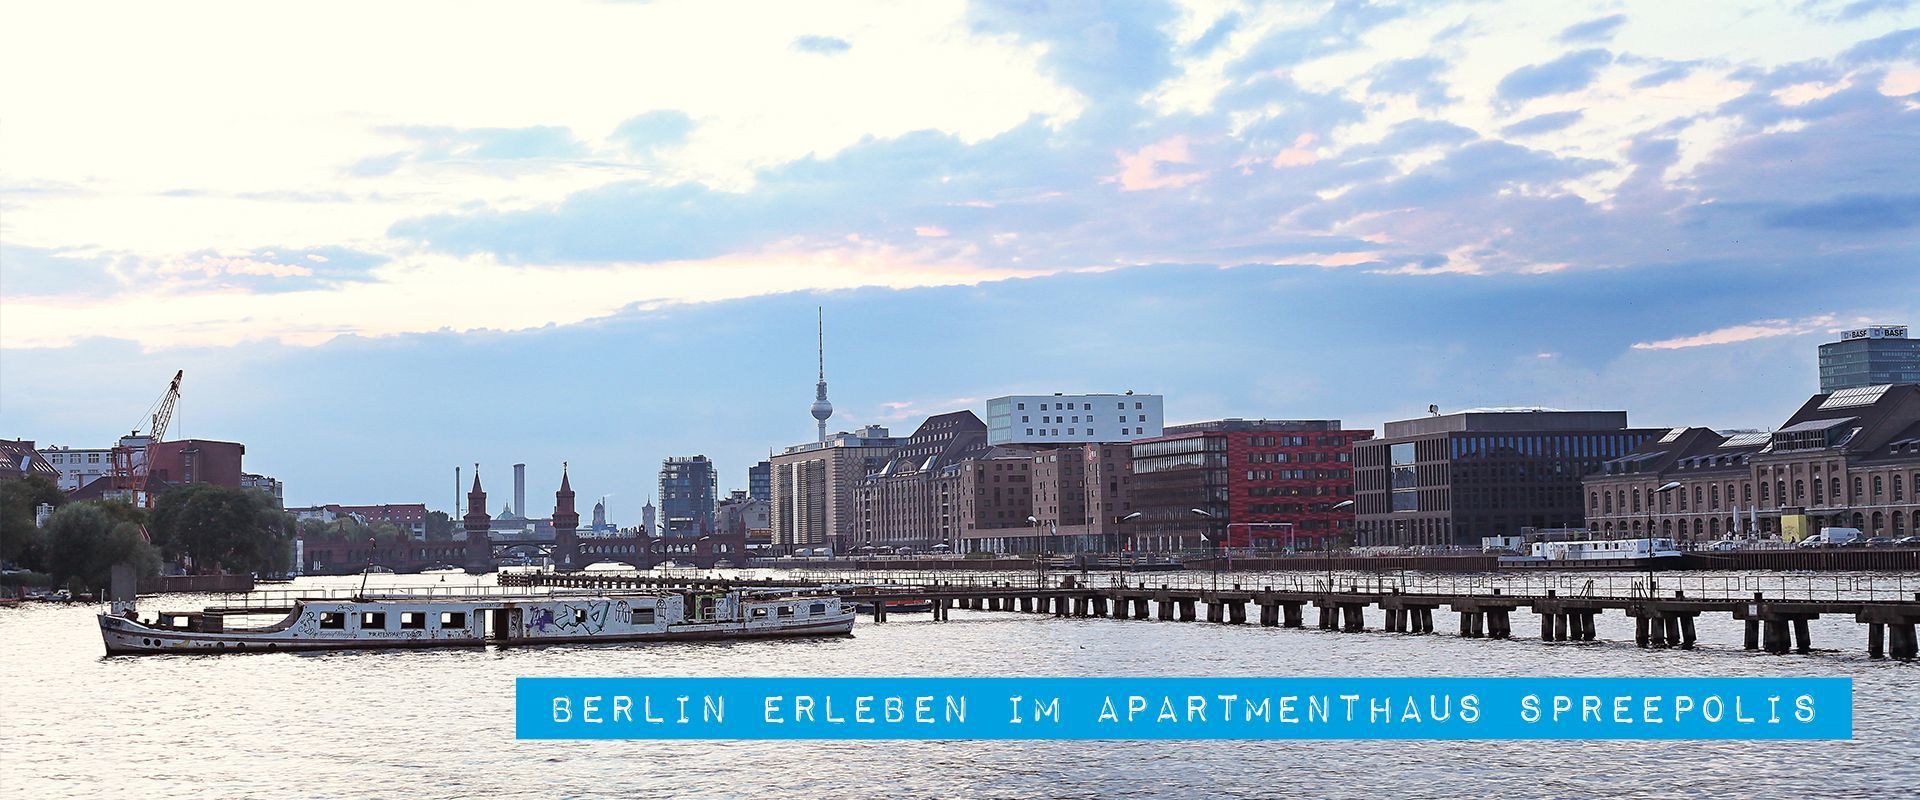 Berlin erleben im Apartmenthaus Speepolis